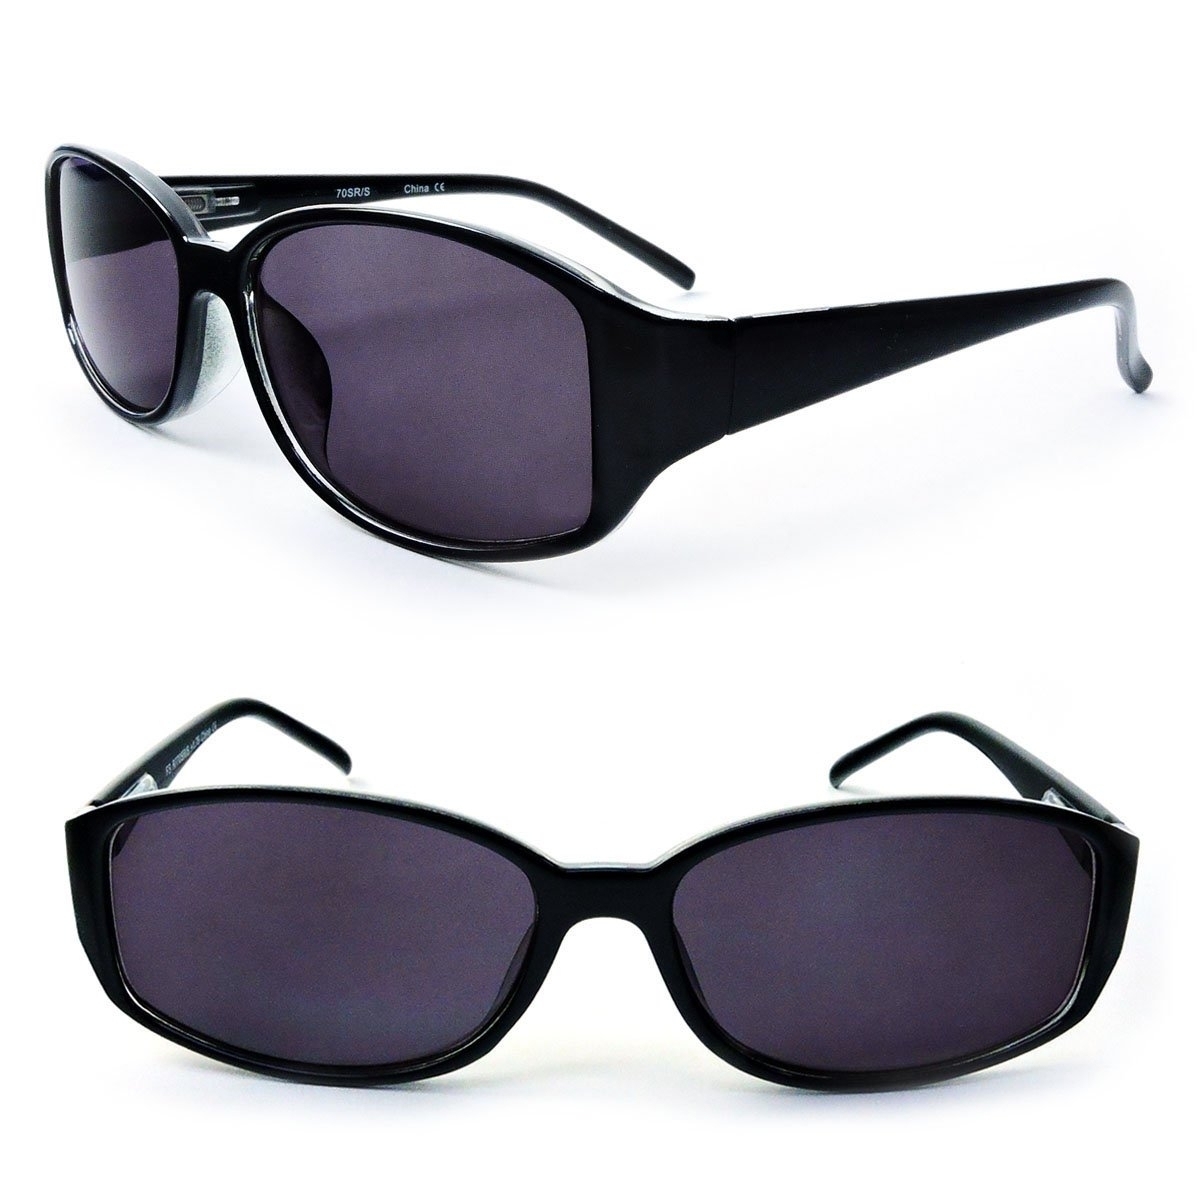 Classic Sun Readers Full Lens Spring Hinges Reading Sunglasses For Women - Black, +3.25